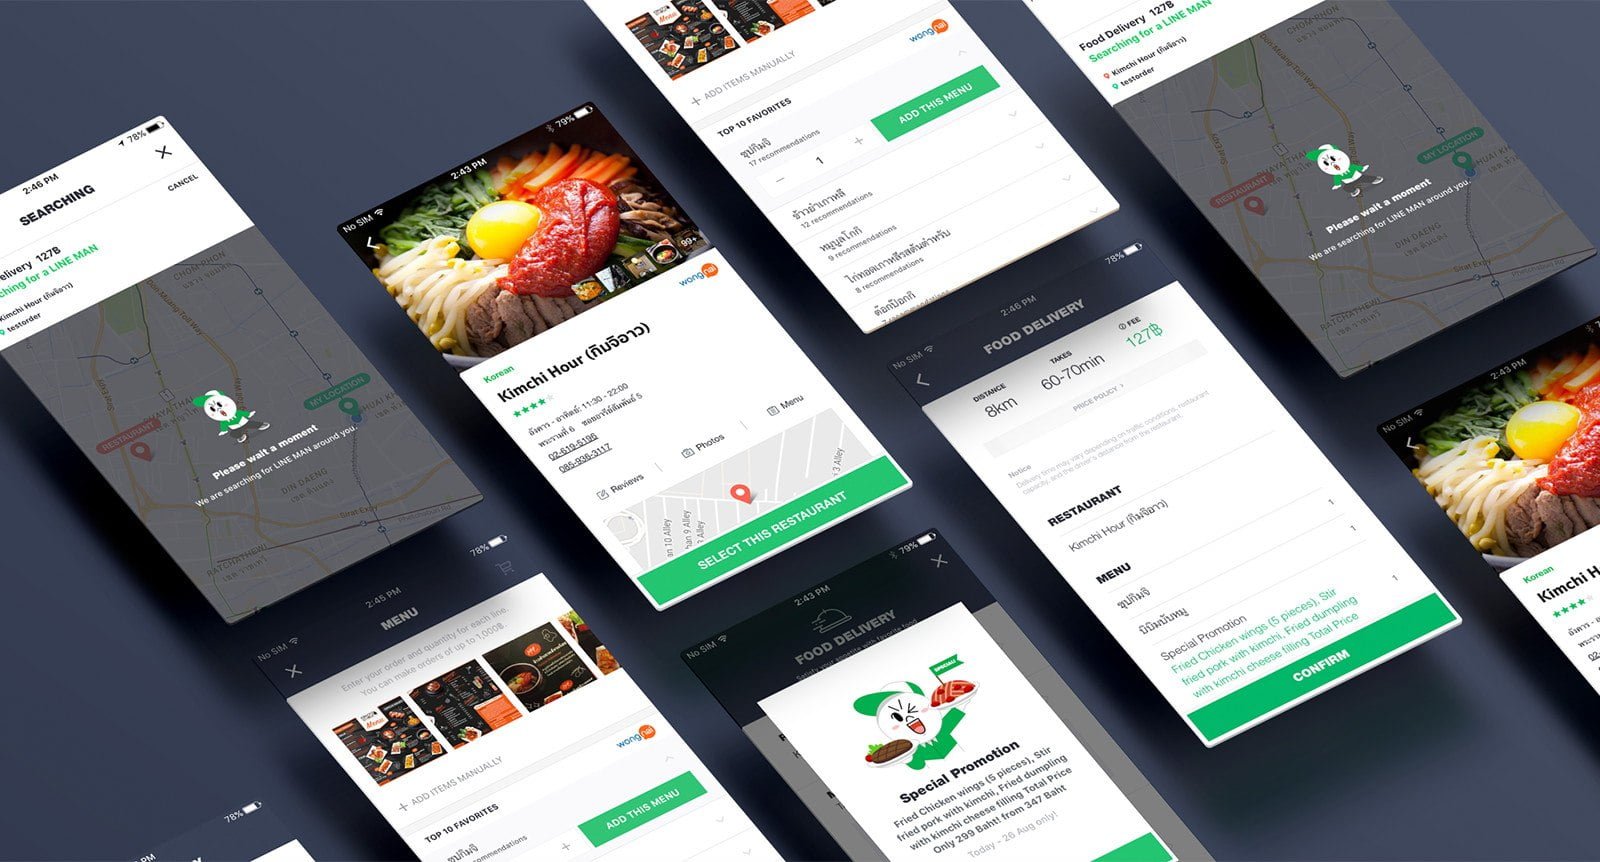 wlw-future-app-mobile-design-essex-london-2